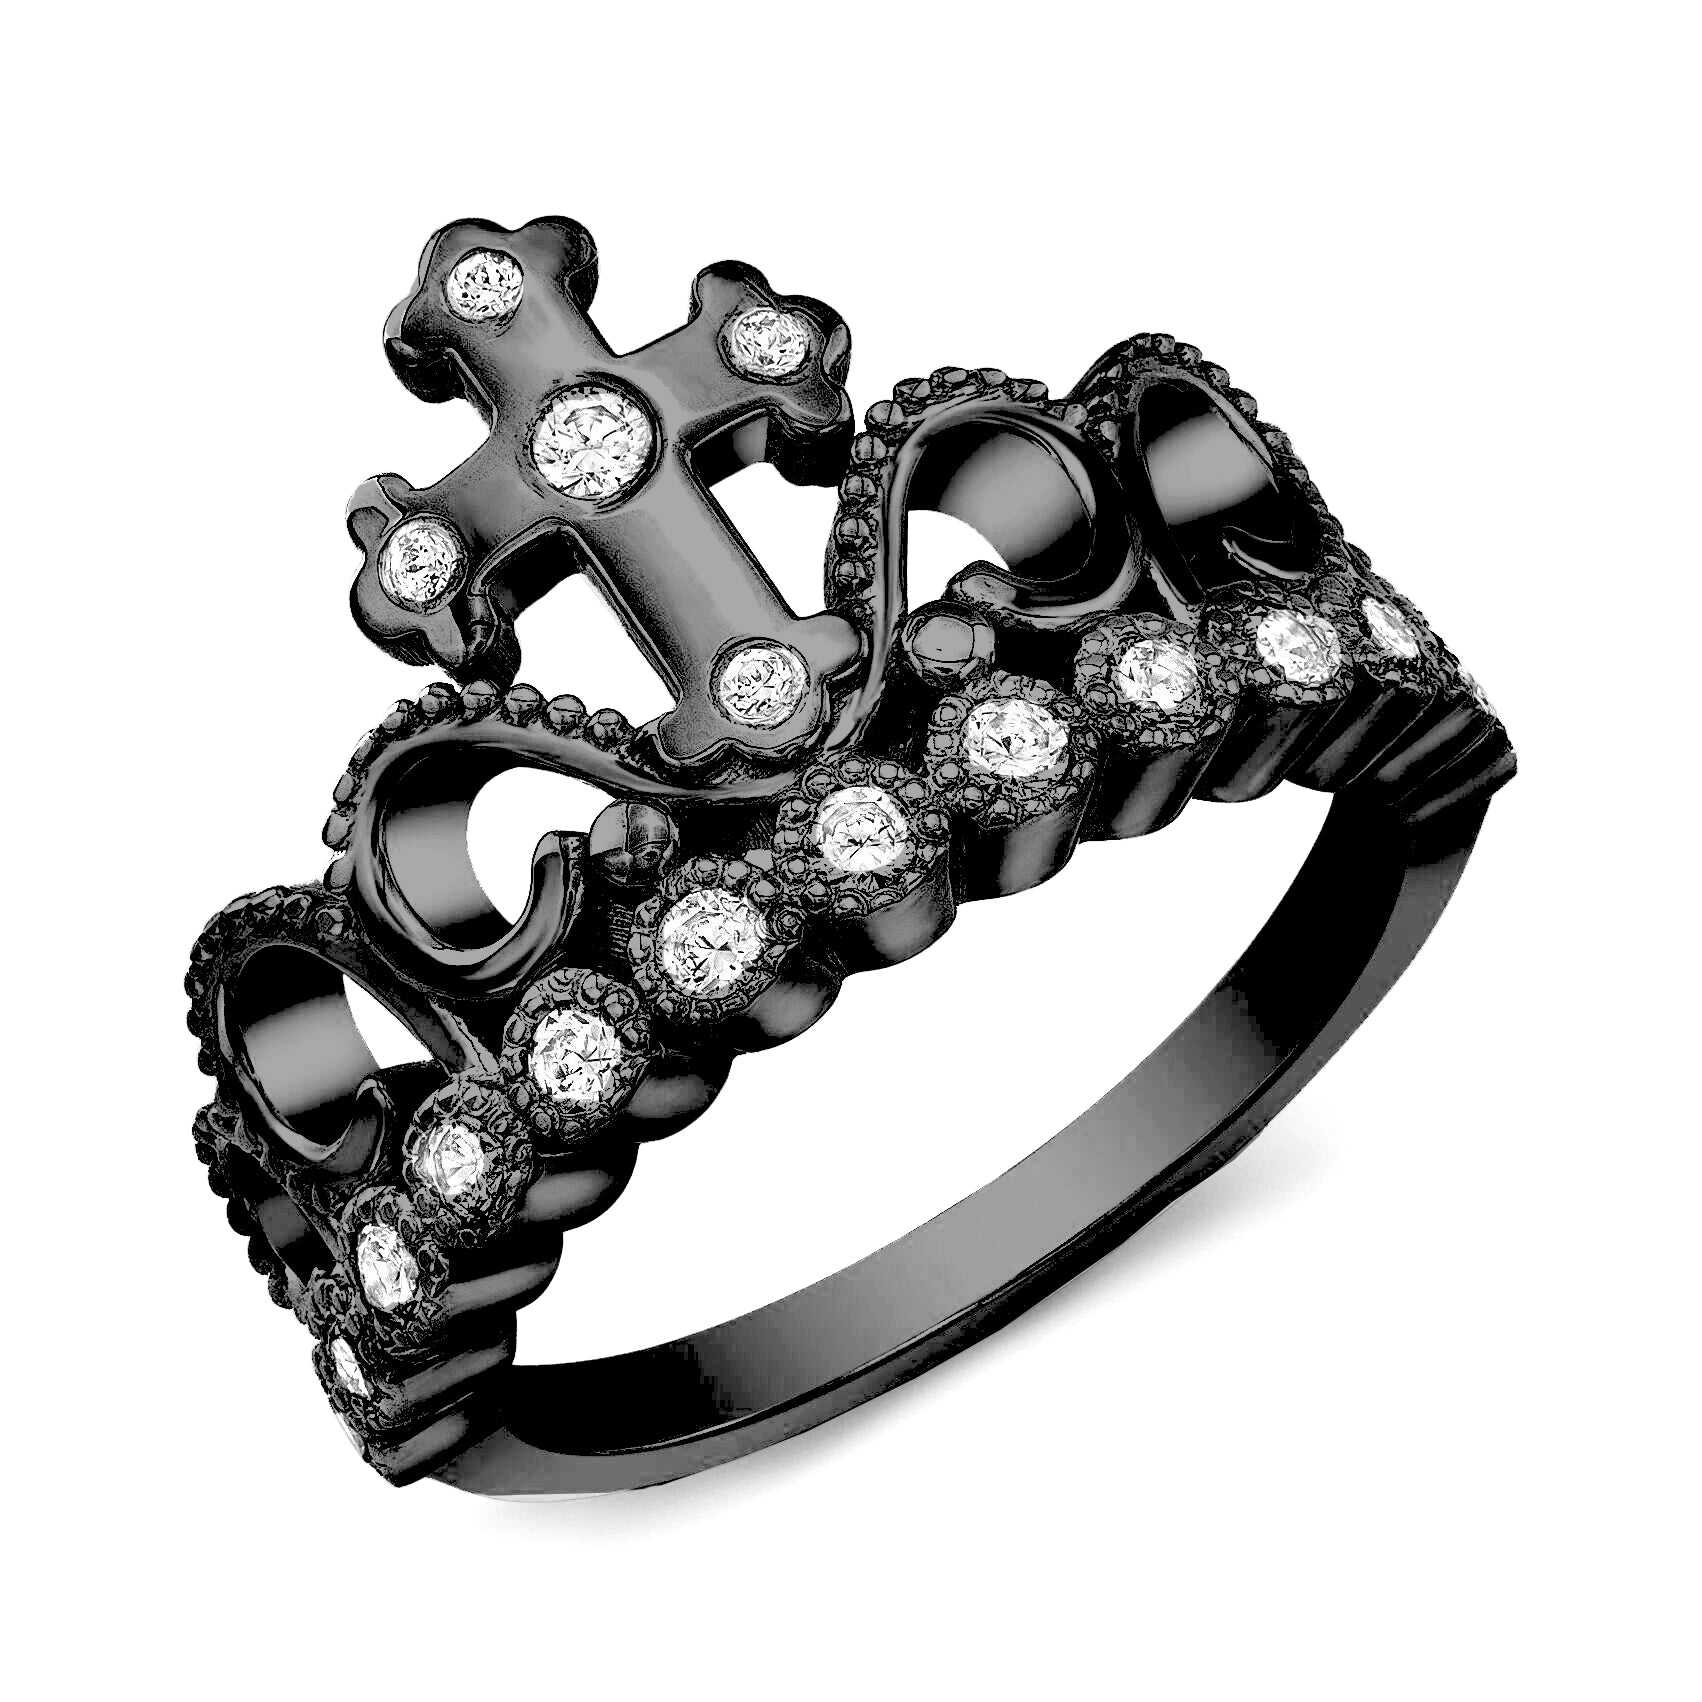 925 Sterling Silver Tiara Crown Ring